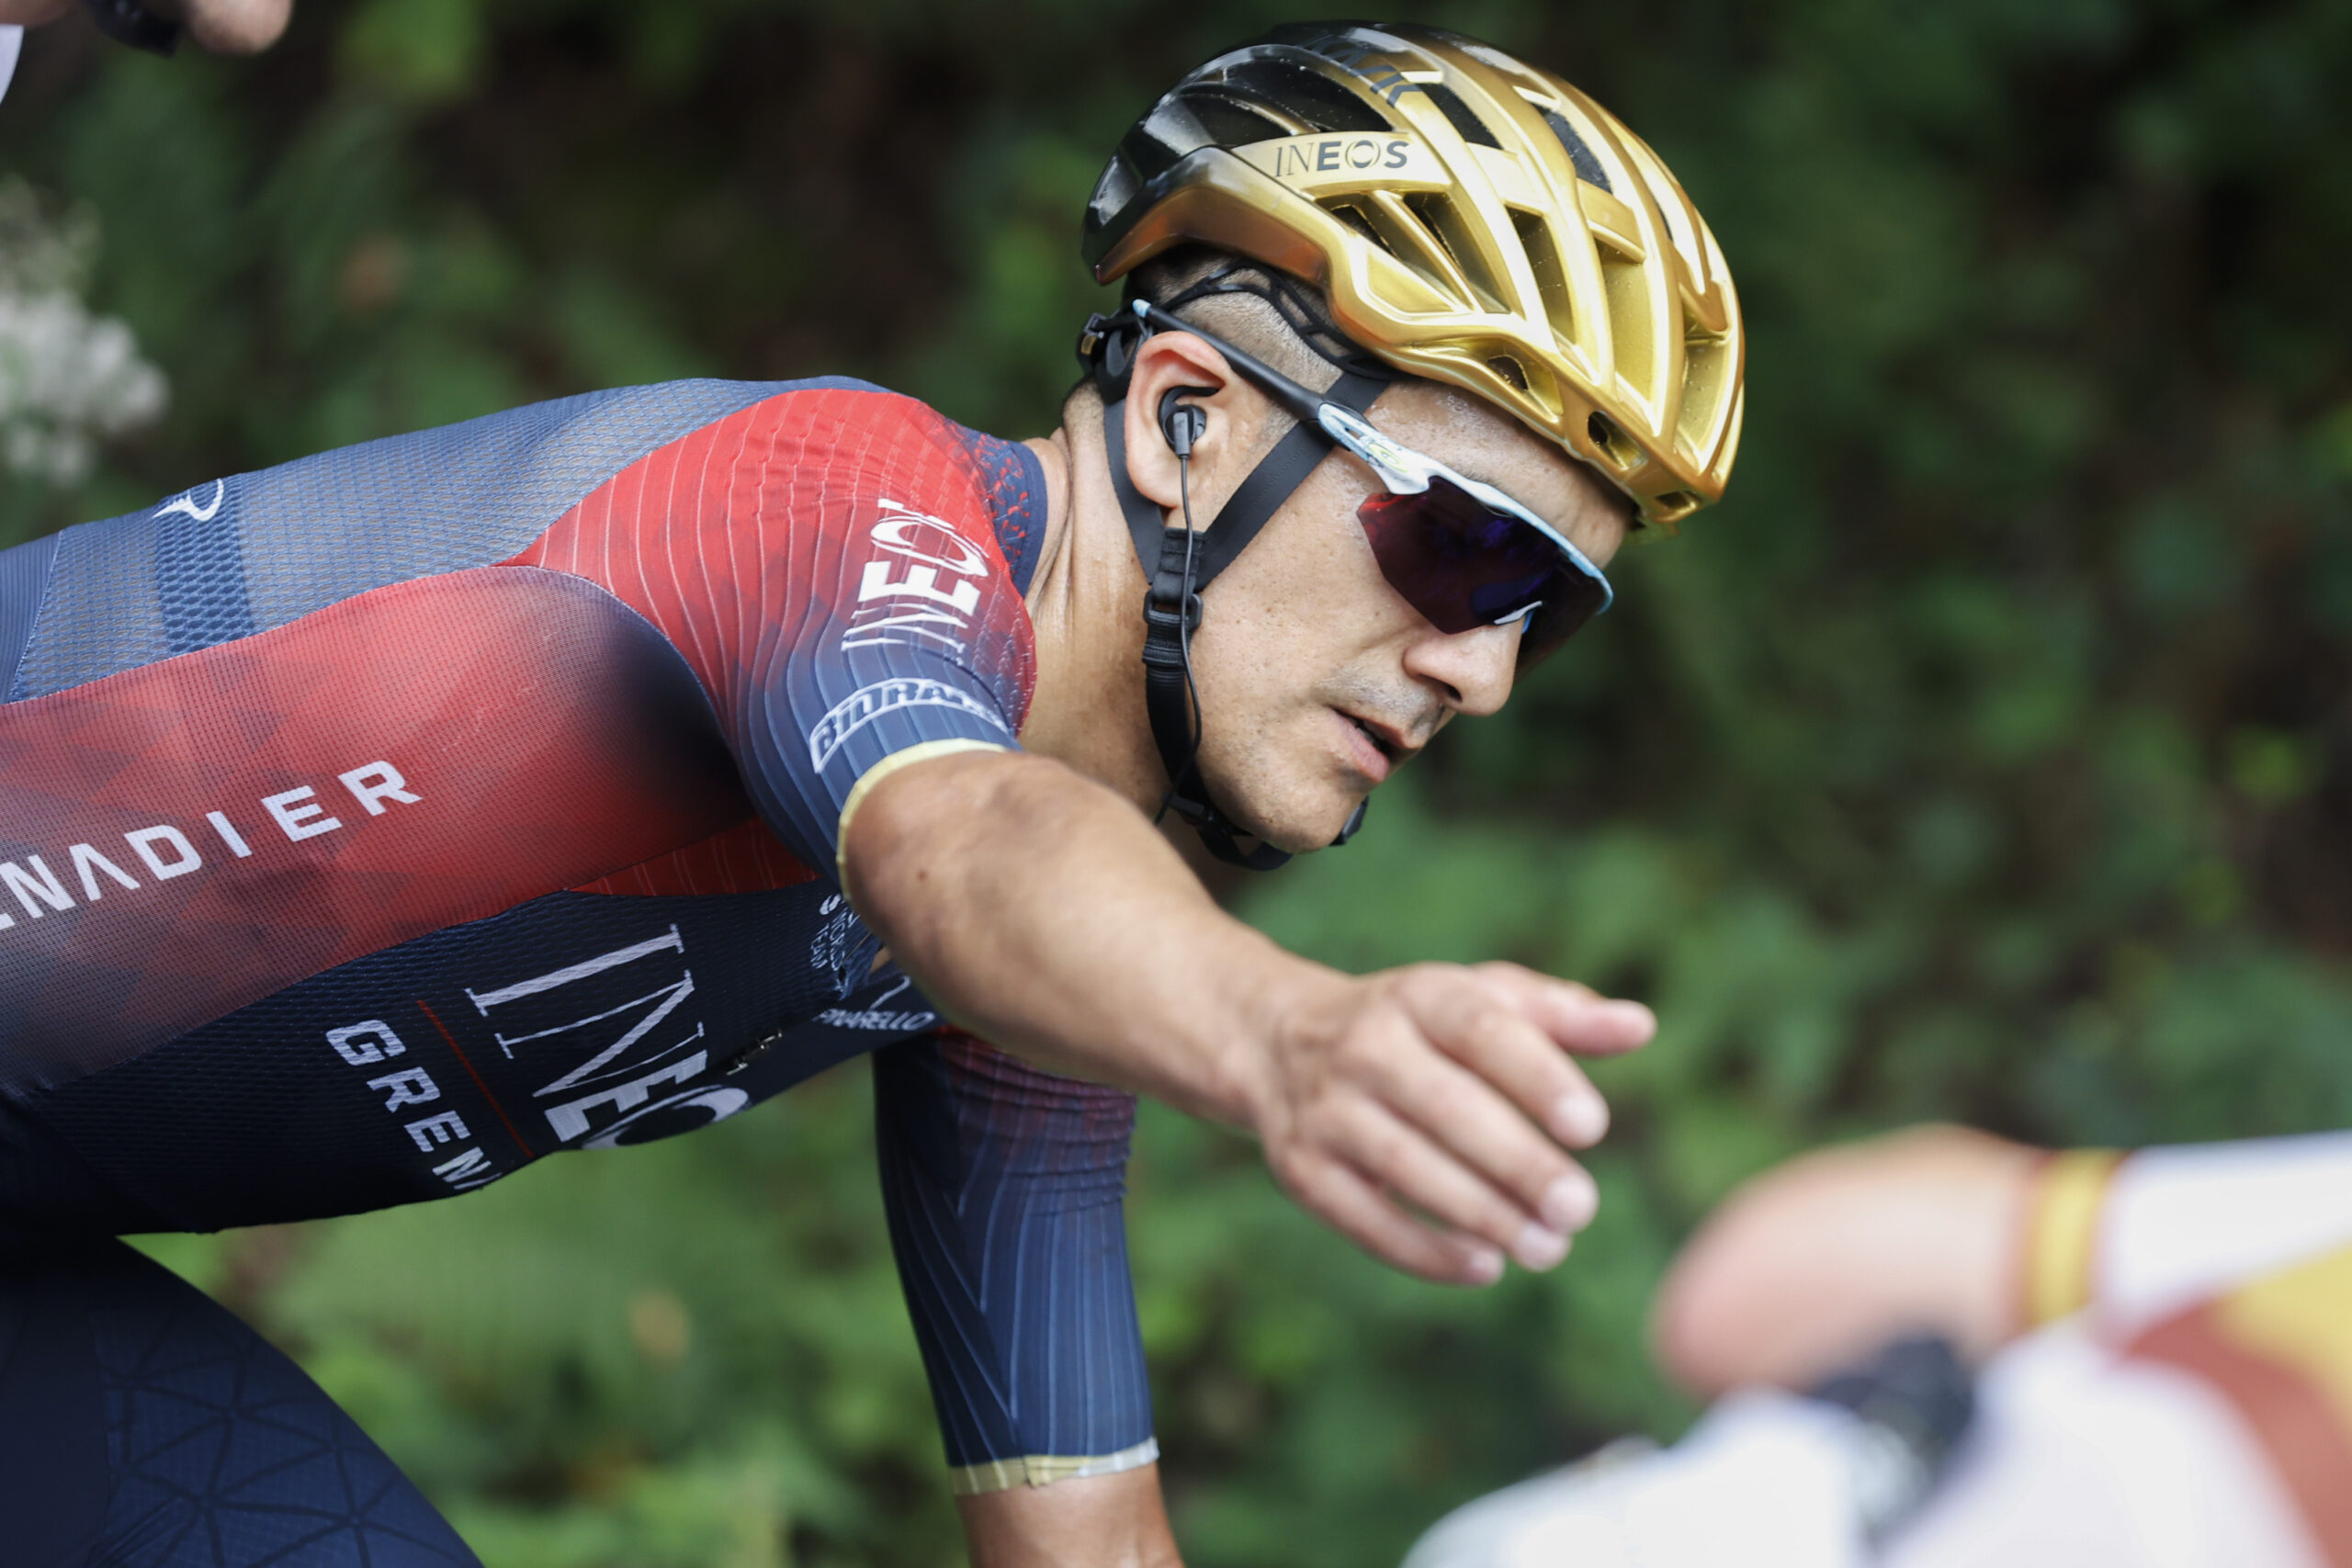 Richard Carapaz, del Ineos Grenadiers, figura destacada en la Vuelta a España 2022. Foto: EFE